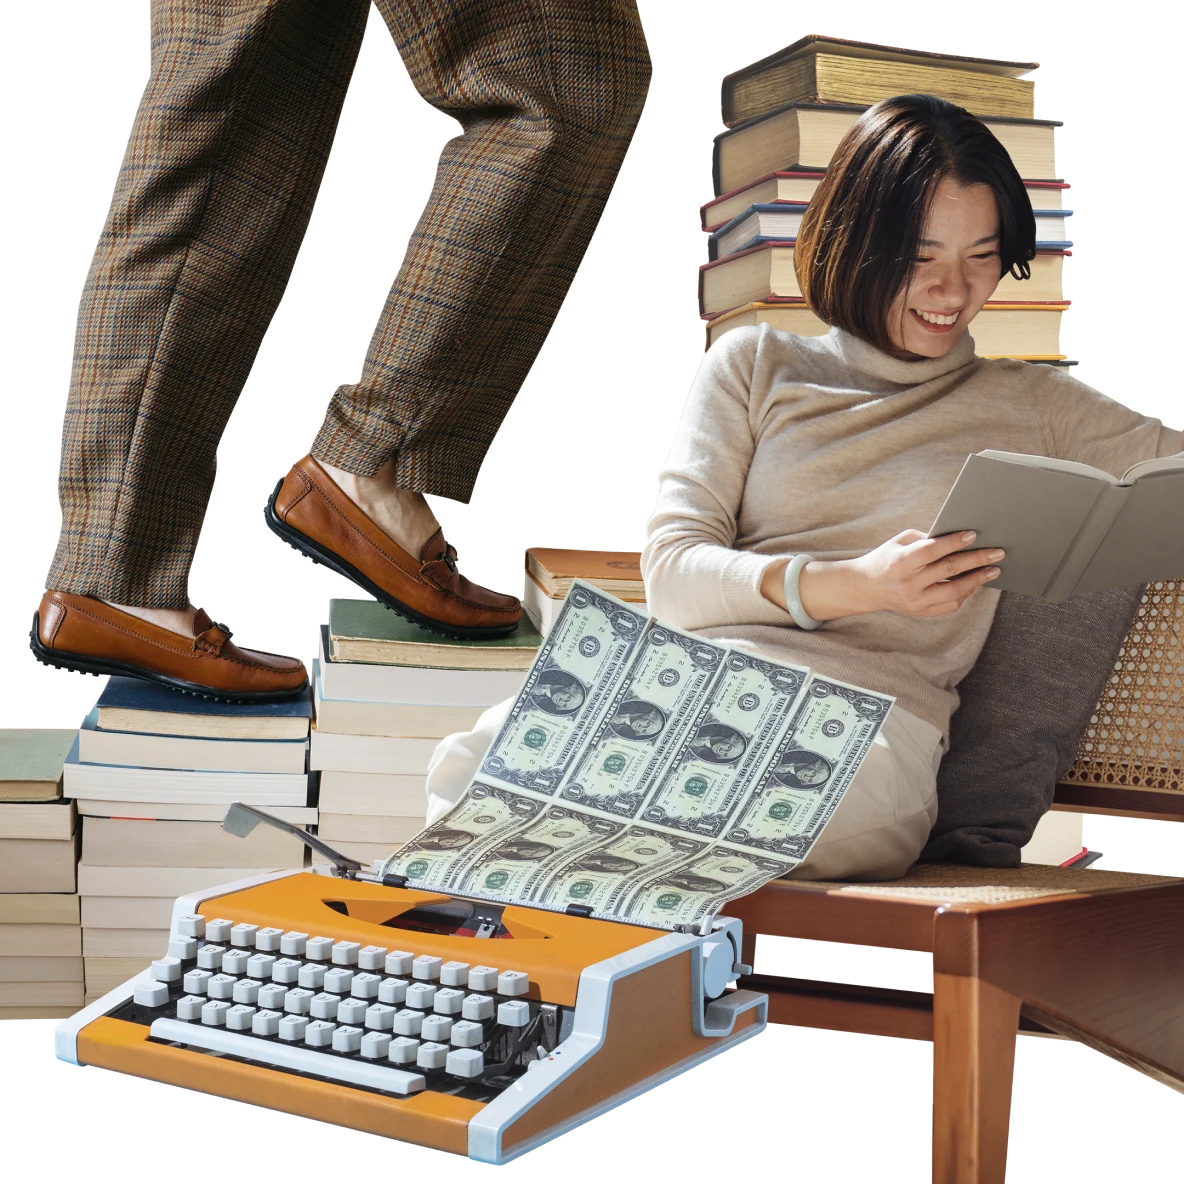 Collage de artículos de temática financiera. Mujer de Asia oriental vestida color marrón claro a la derecha sonriendo y leyendo un libro. Piernas con pantalón escocés subiendo escalones de libros a la derecha. Máquina de escribir naranja con teclas blancas en primer plano imprimiendo hojas de billetes de un dólar estadounidense.